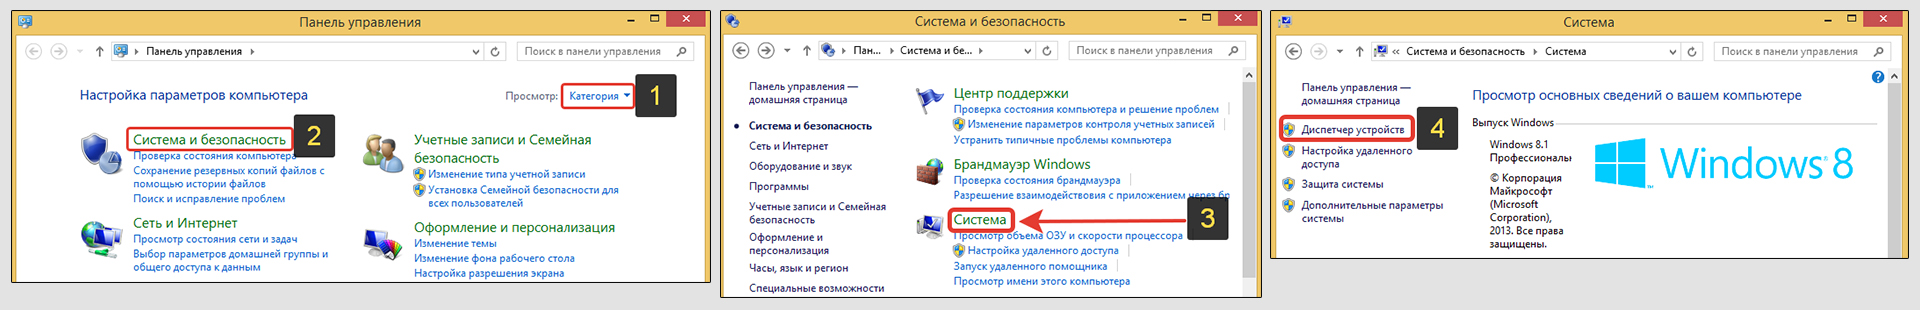 Панель управления Windows 8, раздел система и безопасность.